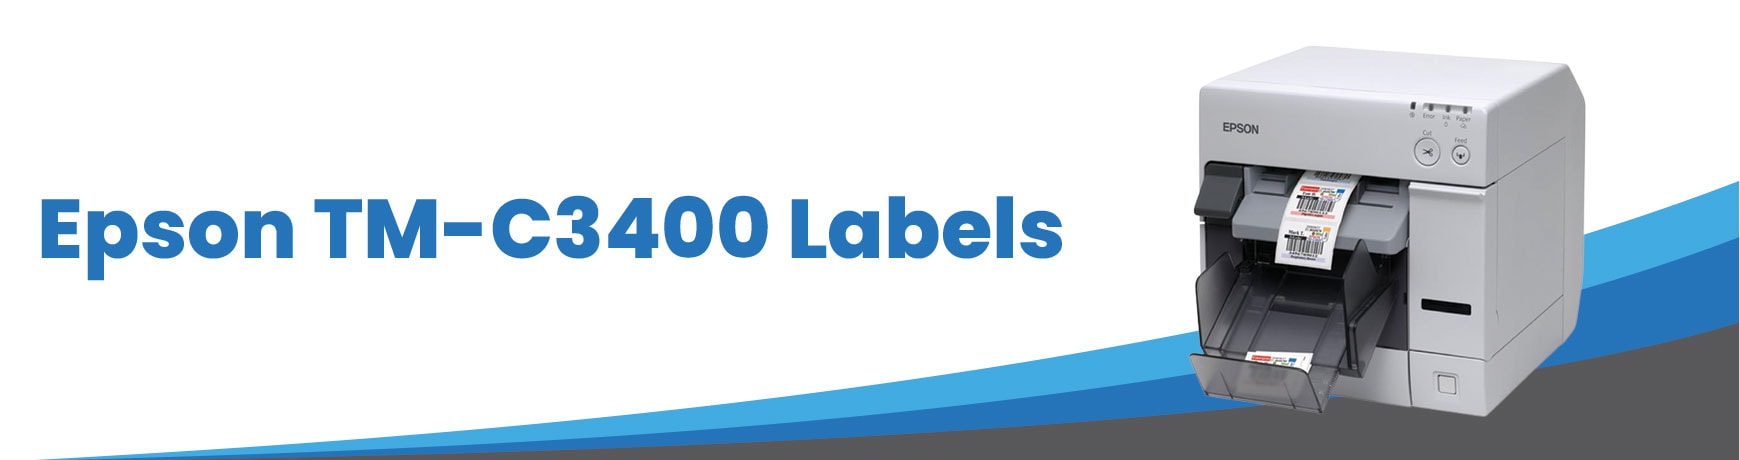 Epson TM-C3400 Labels